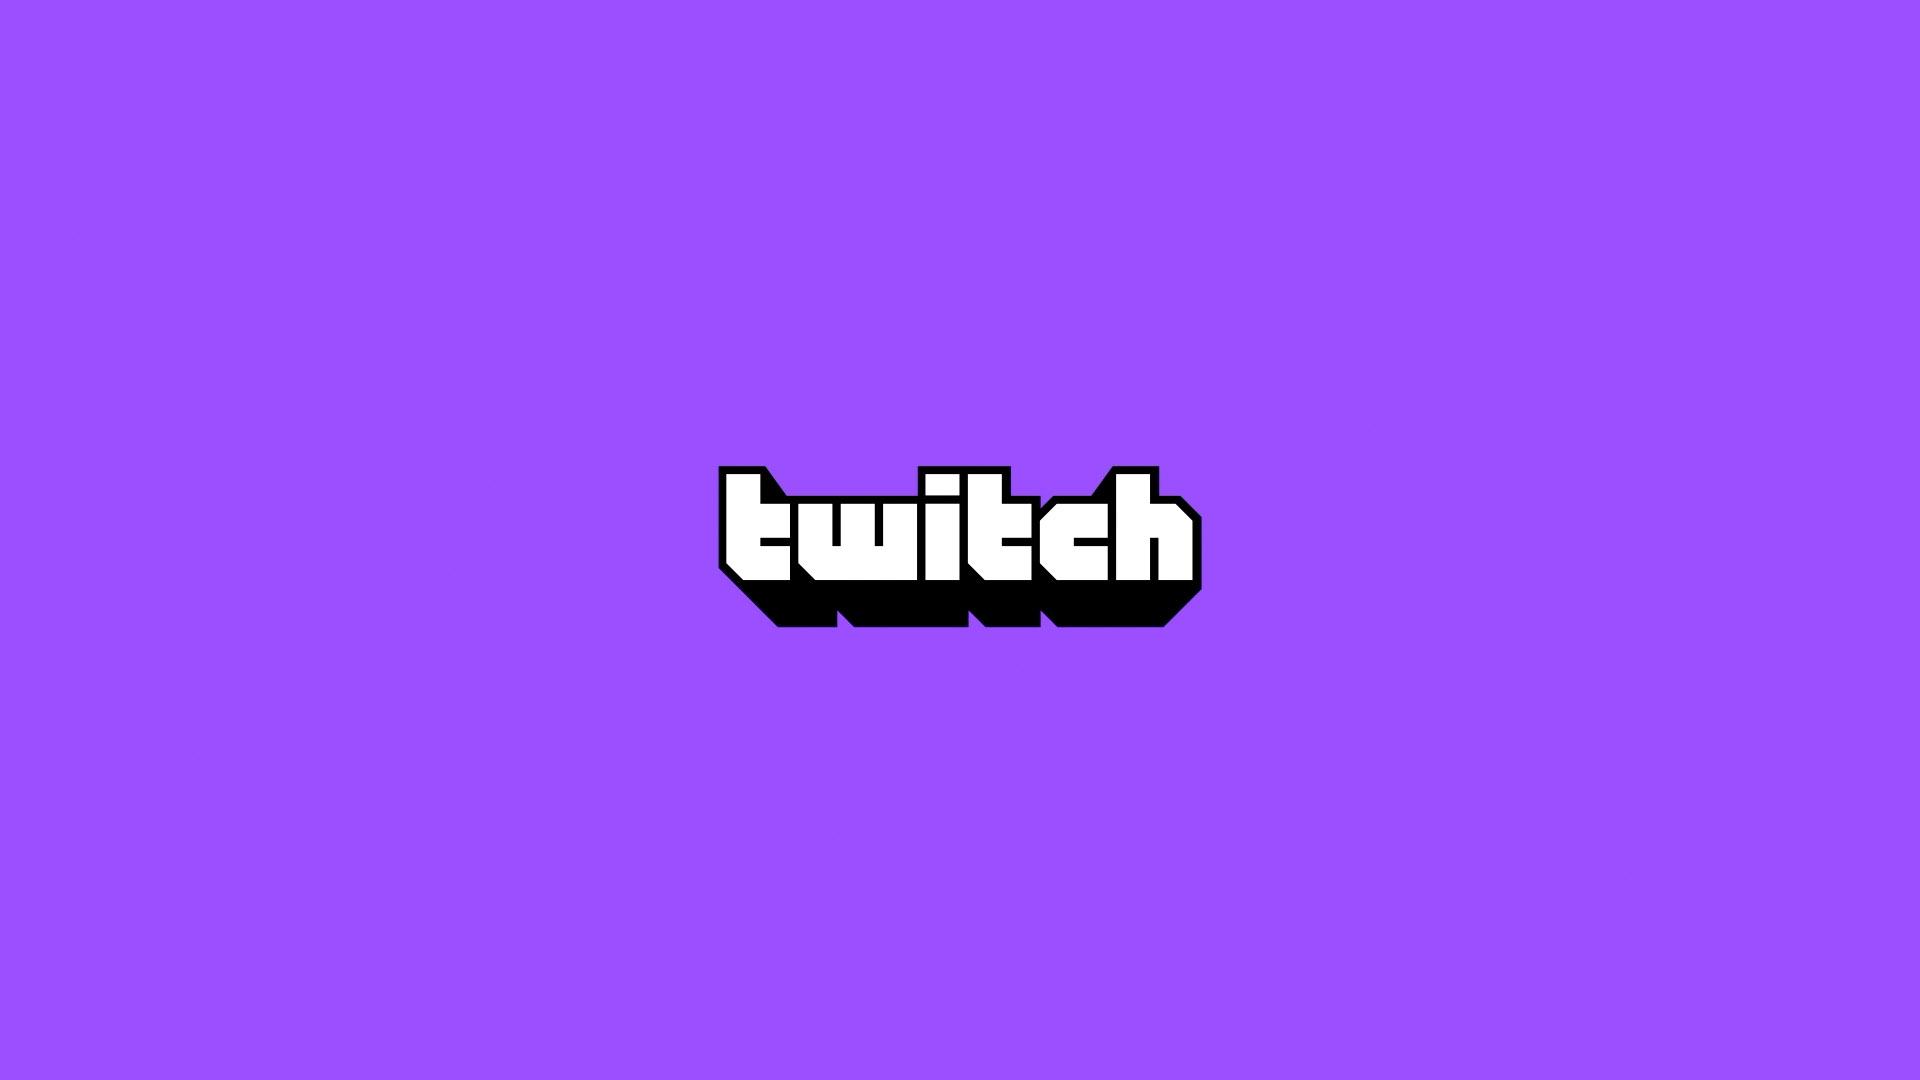 Immagine del logo Twitch in bianco e nero su sfondo viola.